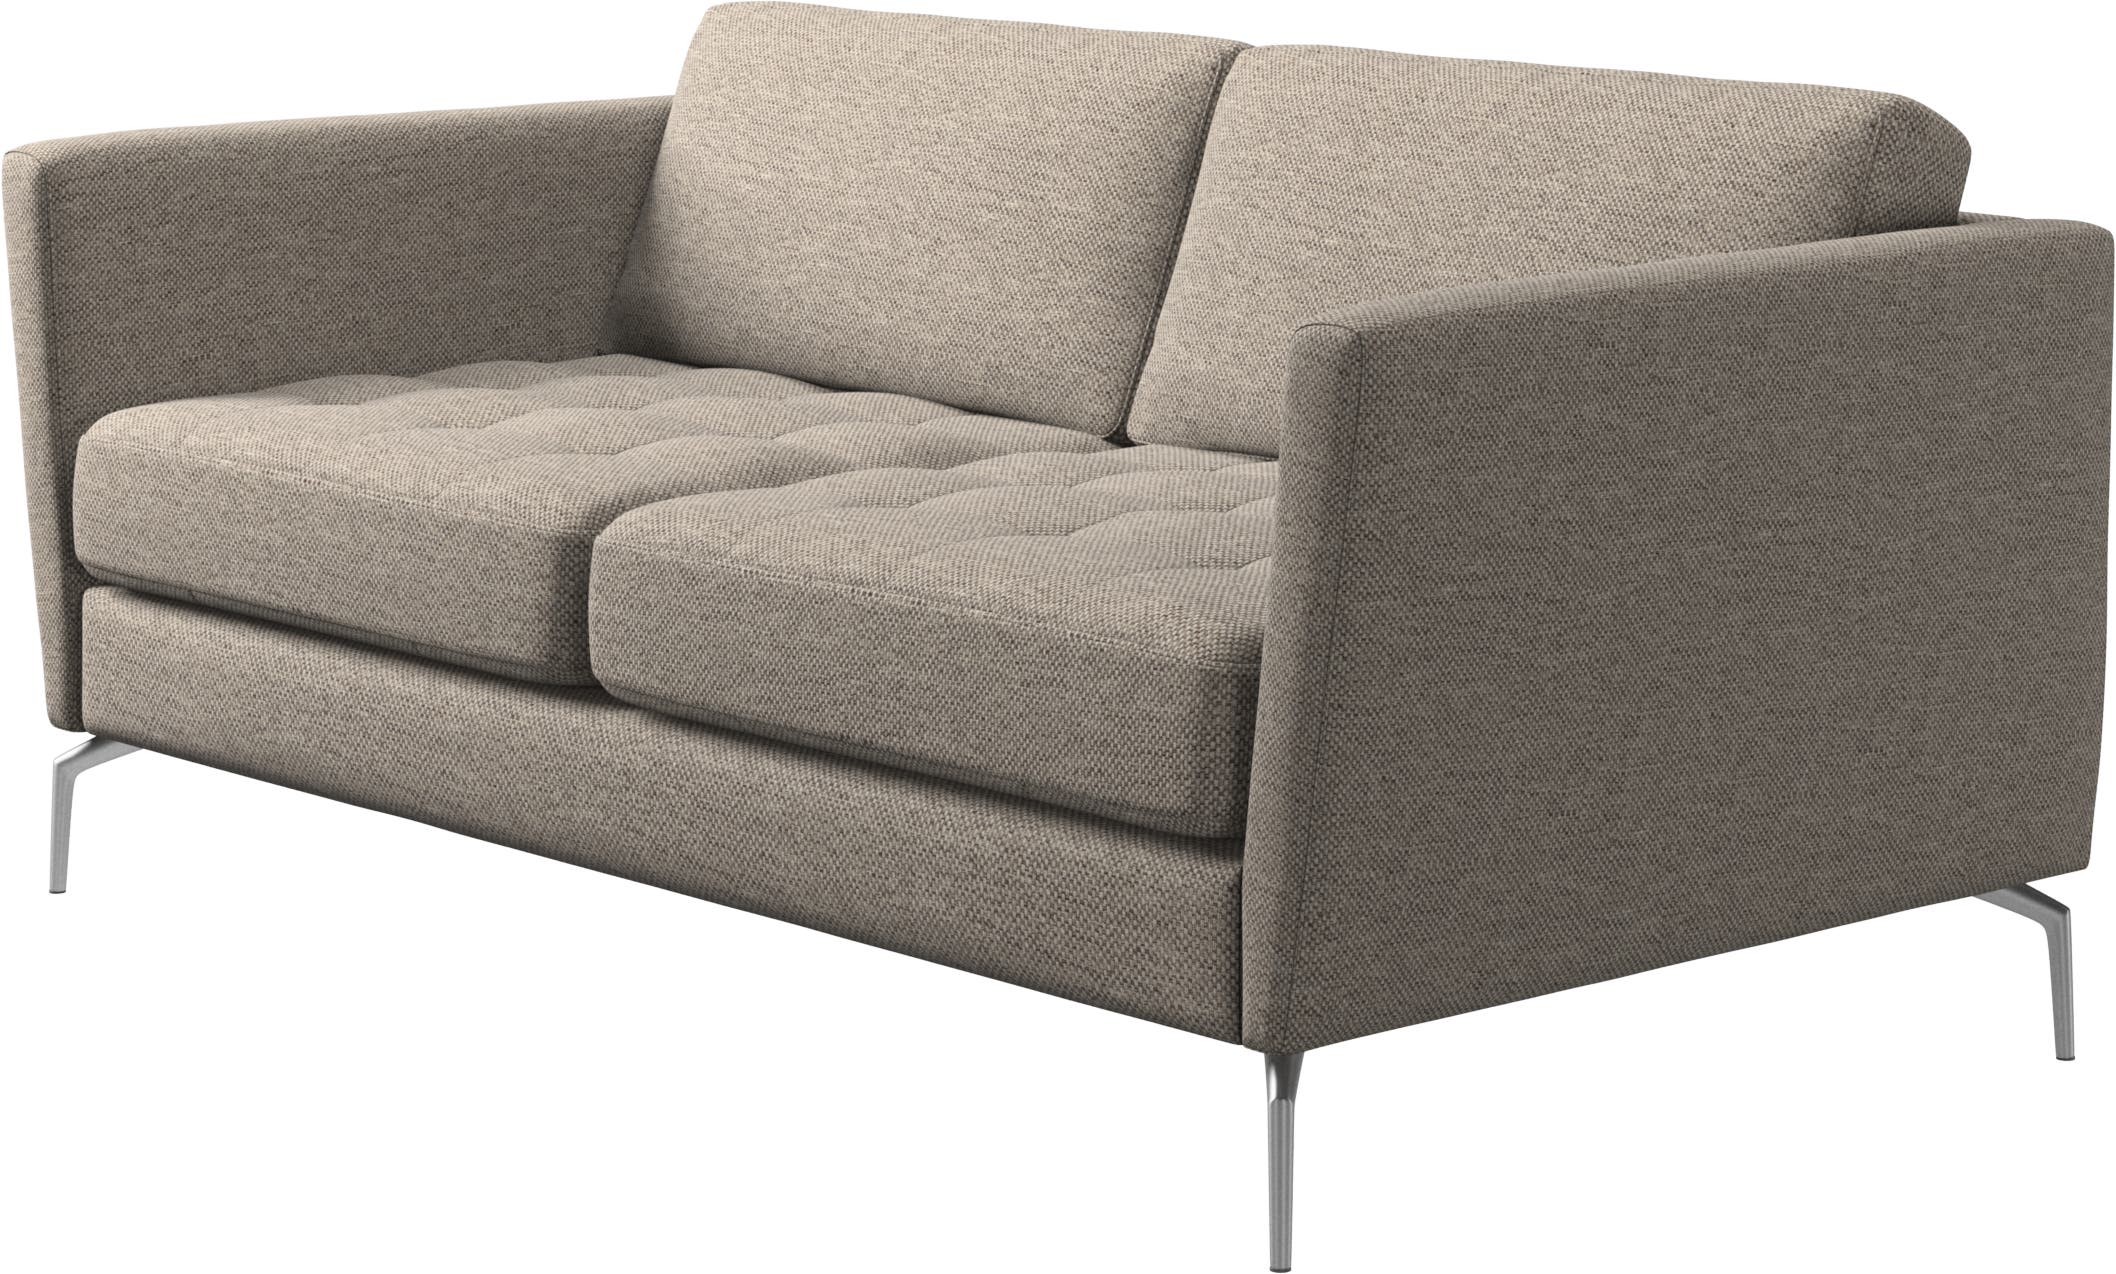 2人掛けデザイナーソファ | デンマークデザインの家具 | ボーコンセプト